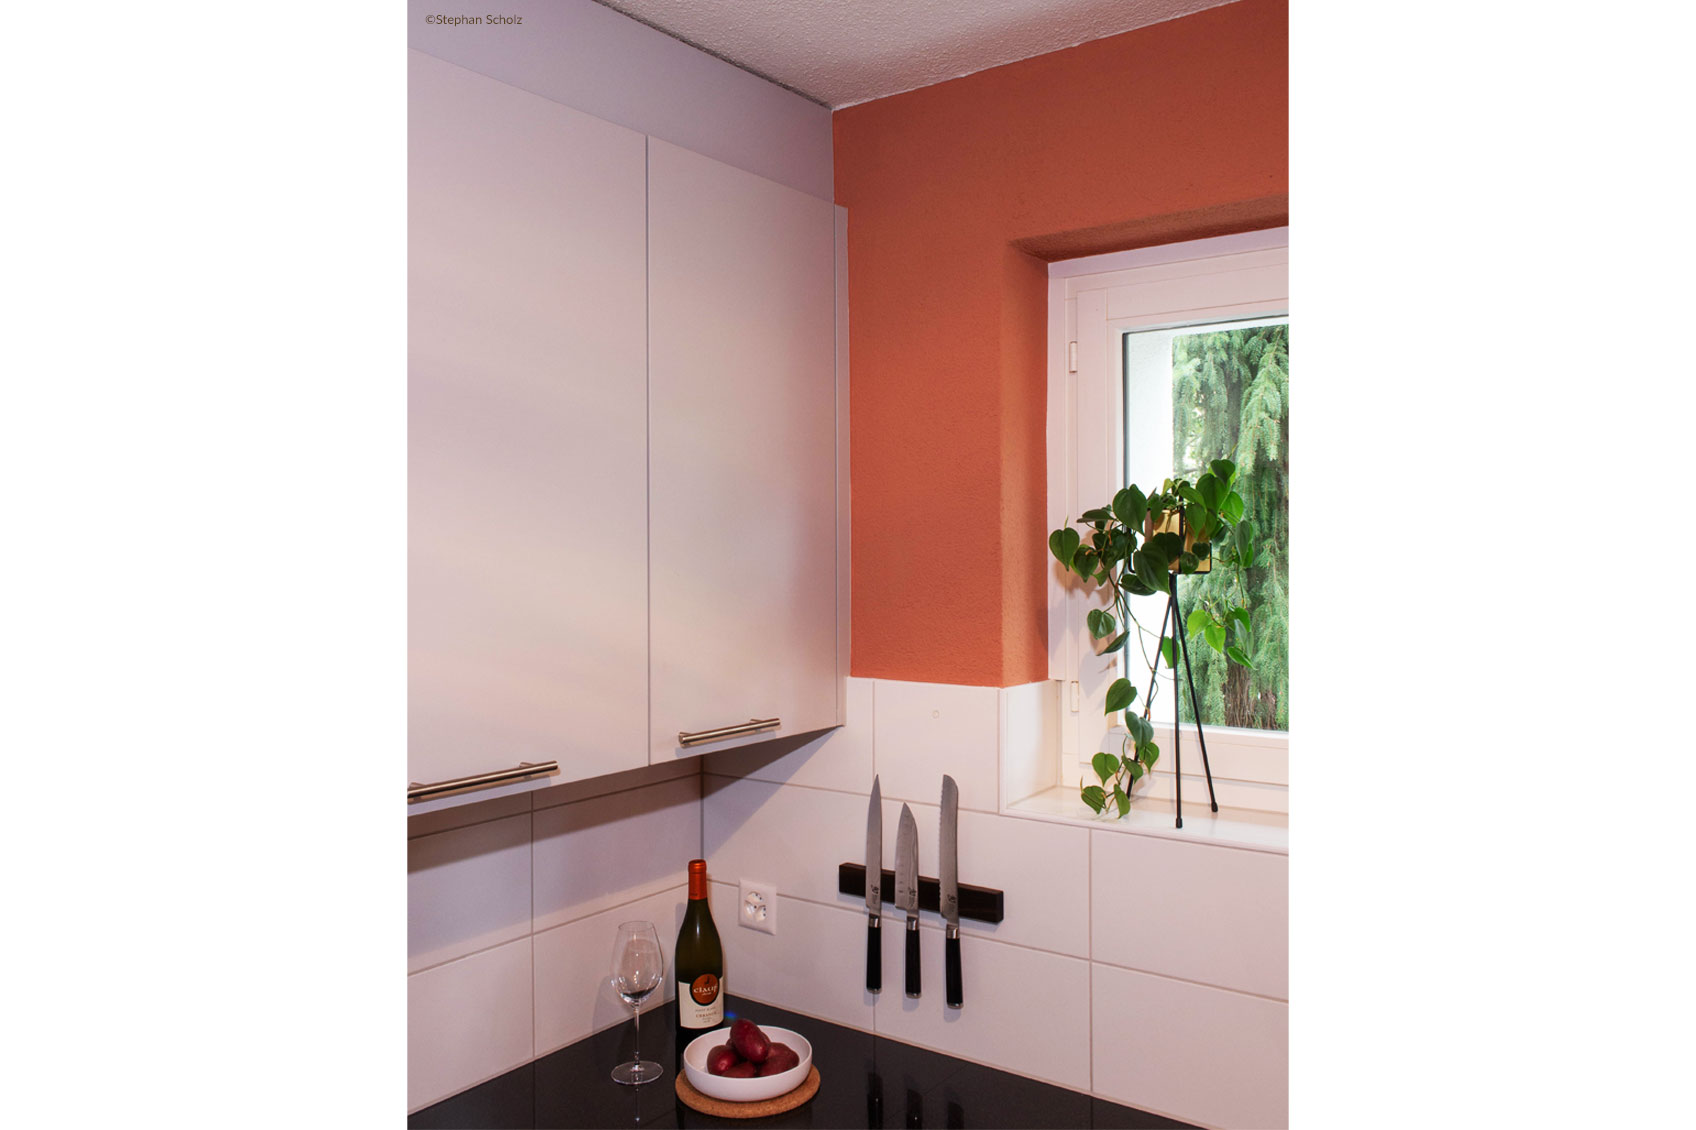 Design couleur Le Corbusier cuisine couleur murale Photo Stephan Scholz